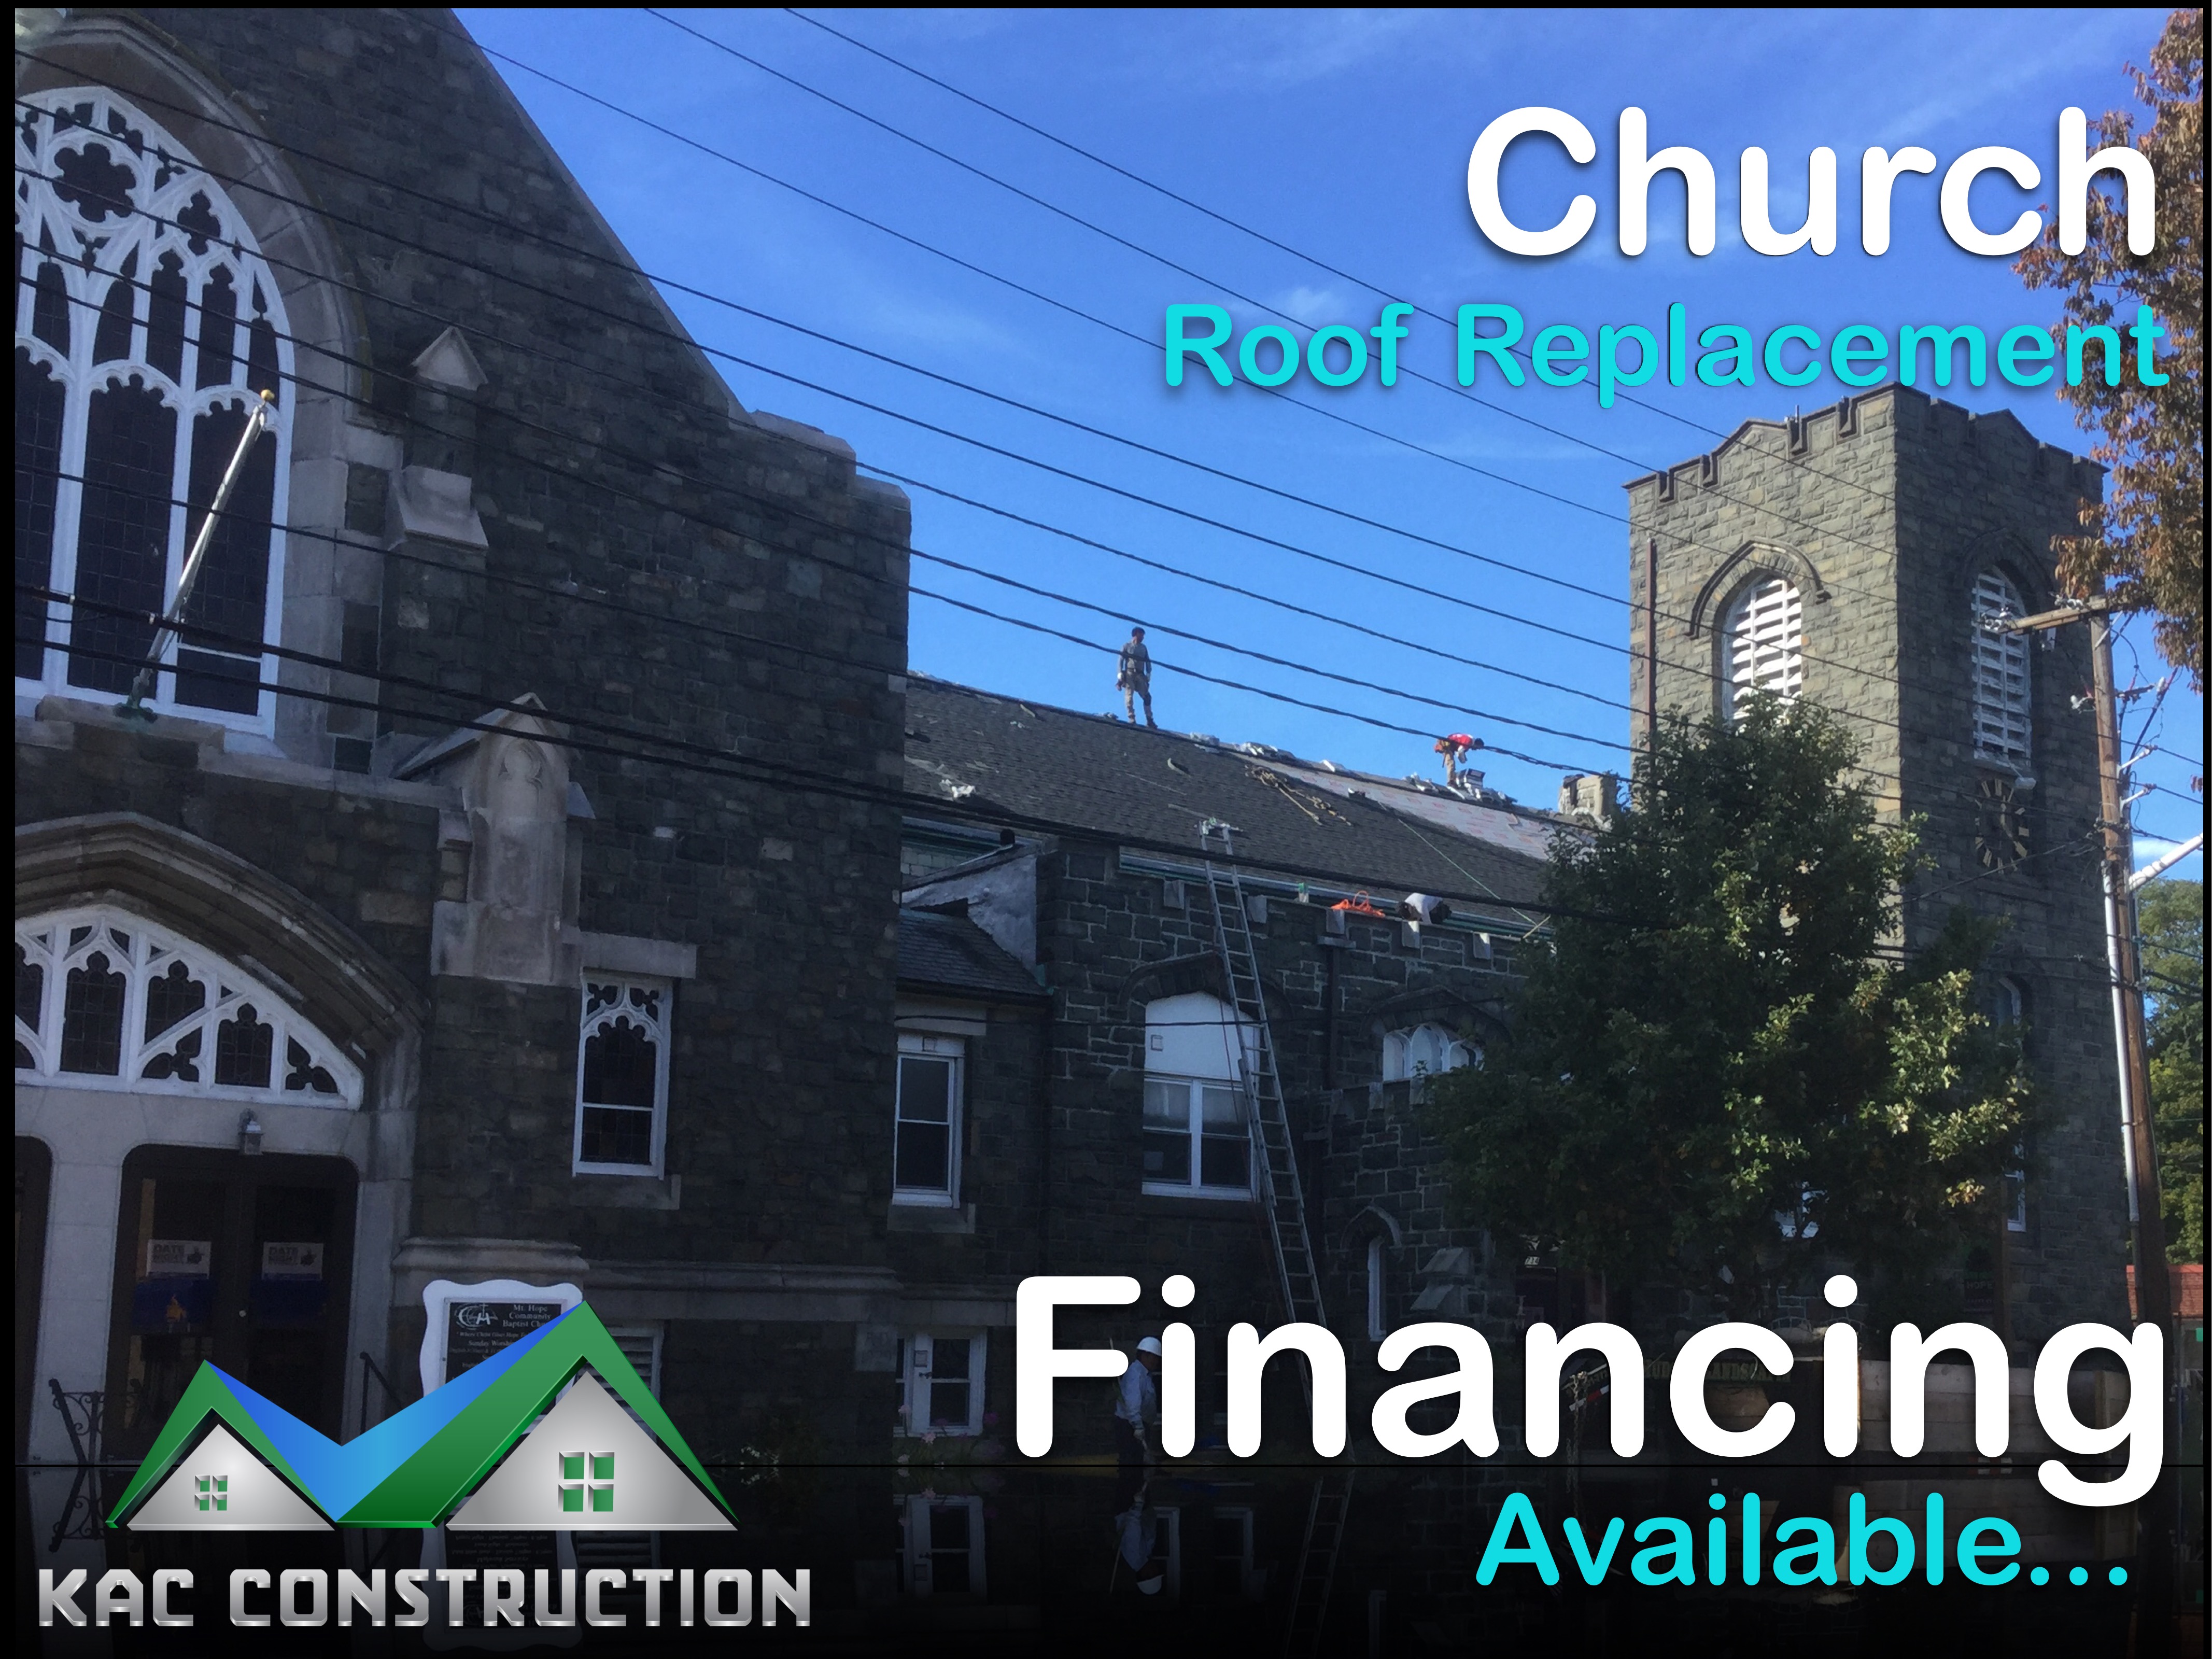 church roof financing, church roof financing ct, church roof financing in ct, church roof replacement new haven, church roof financing new haven, church roof financing in new haven